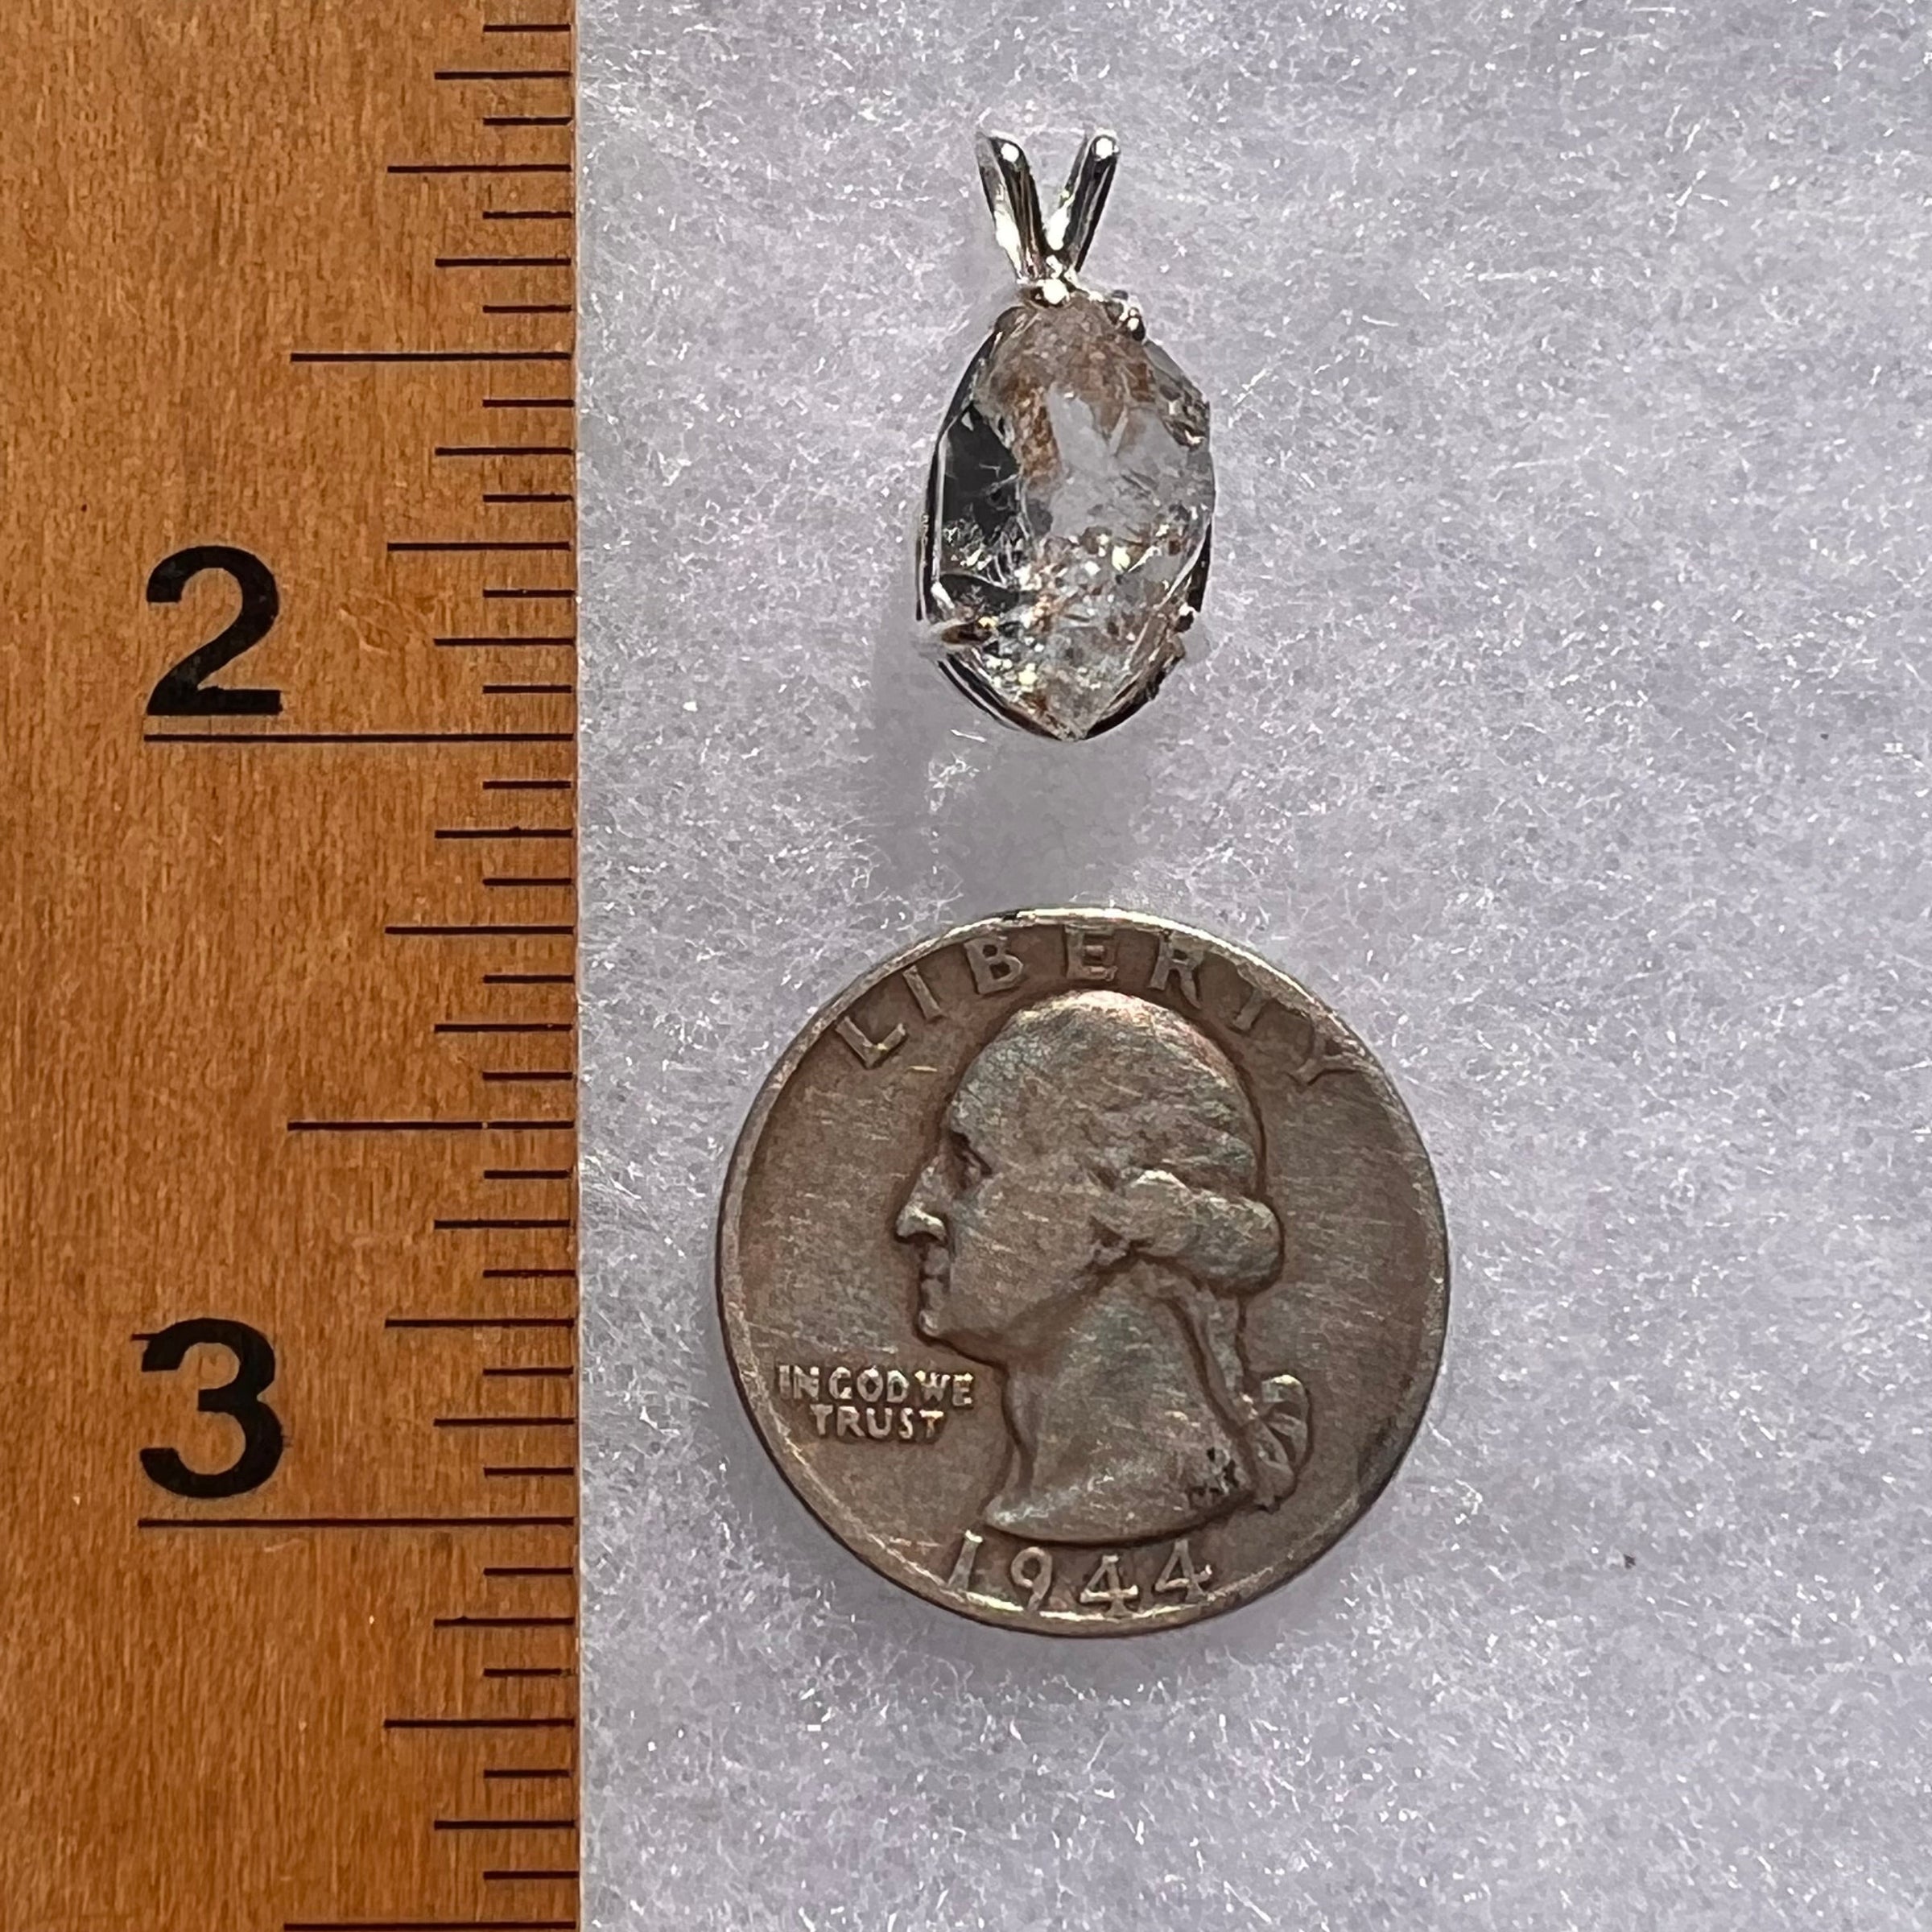 Herkimer Diamond Pendant Sterling Silver #6074-Moldavite Life